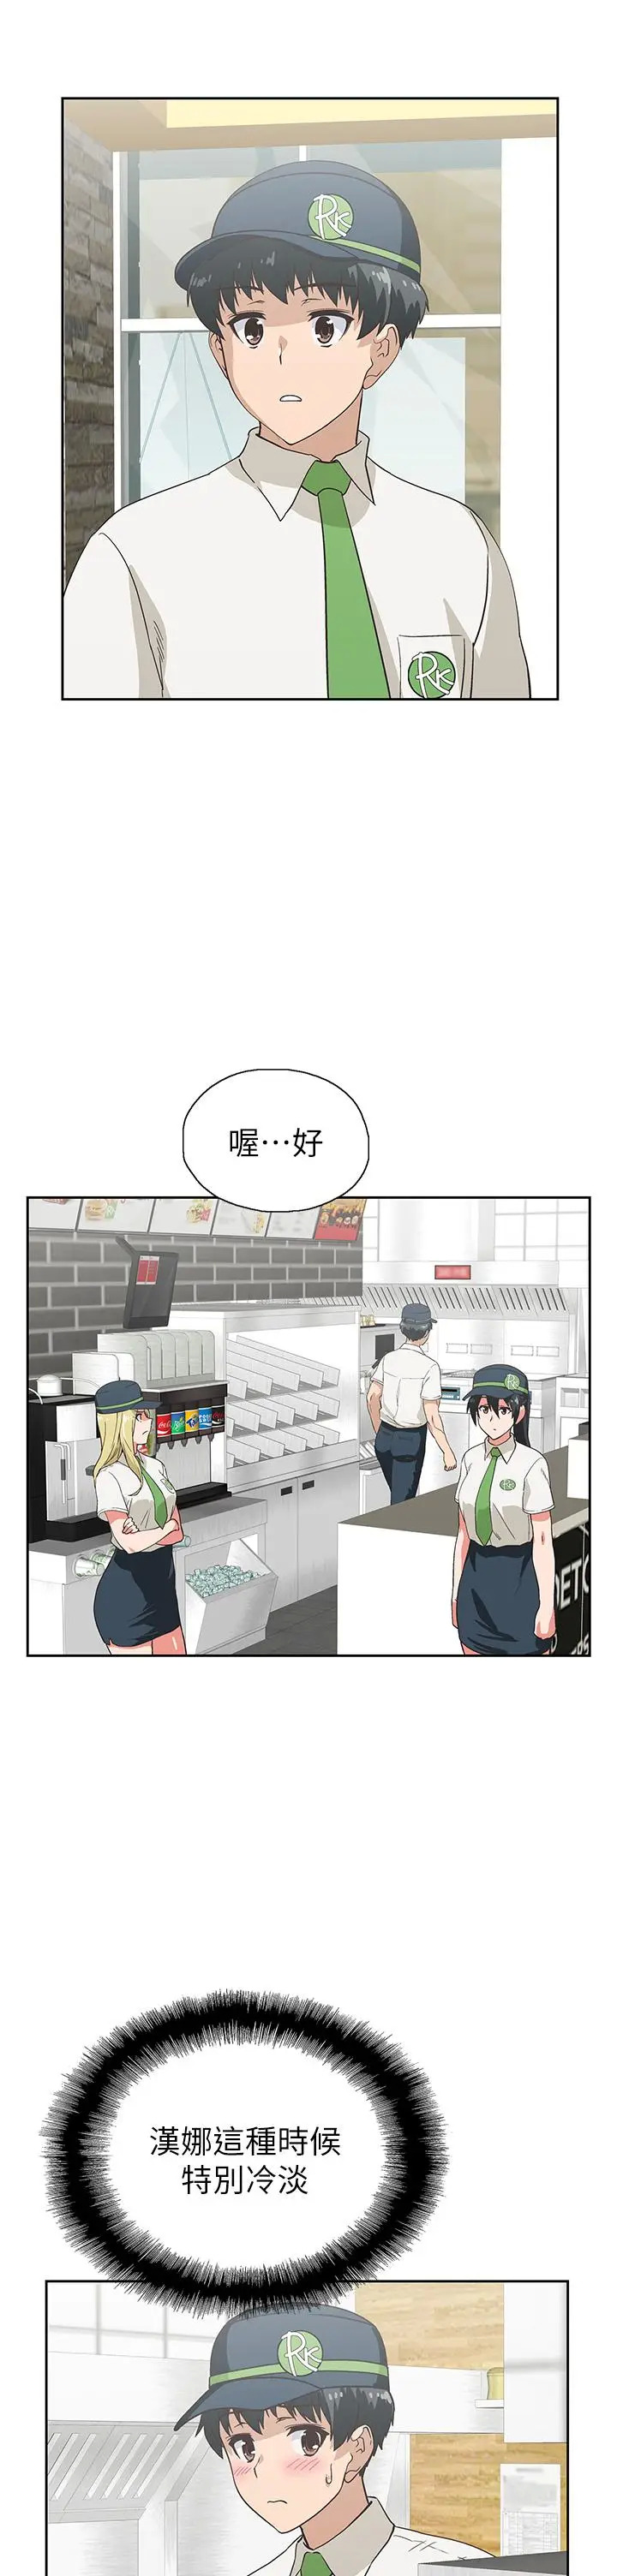 《梦幻速食店》漫画 第25话-书娴姐，不是要玩吗